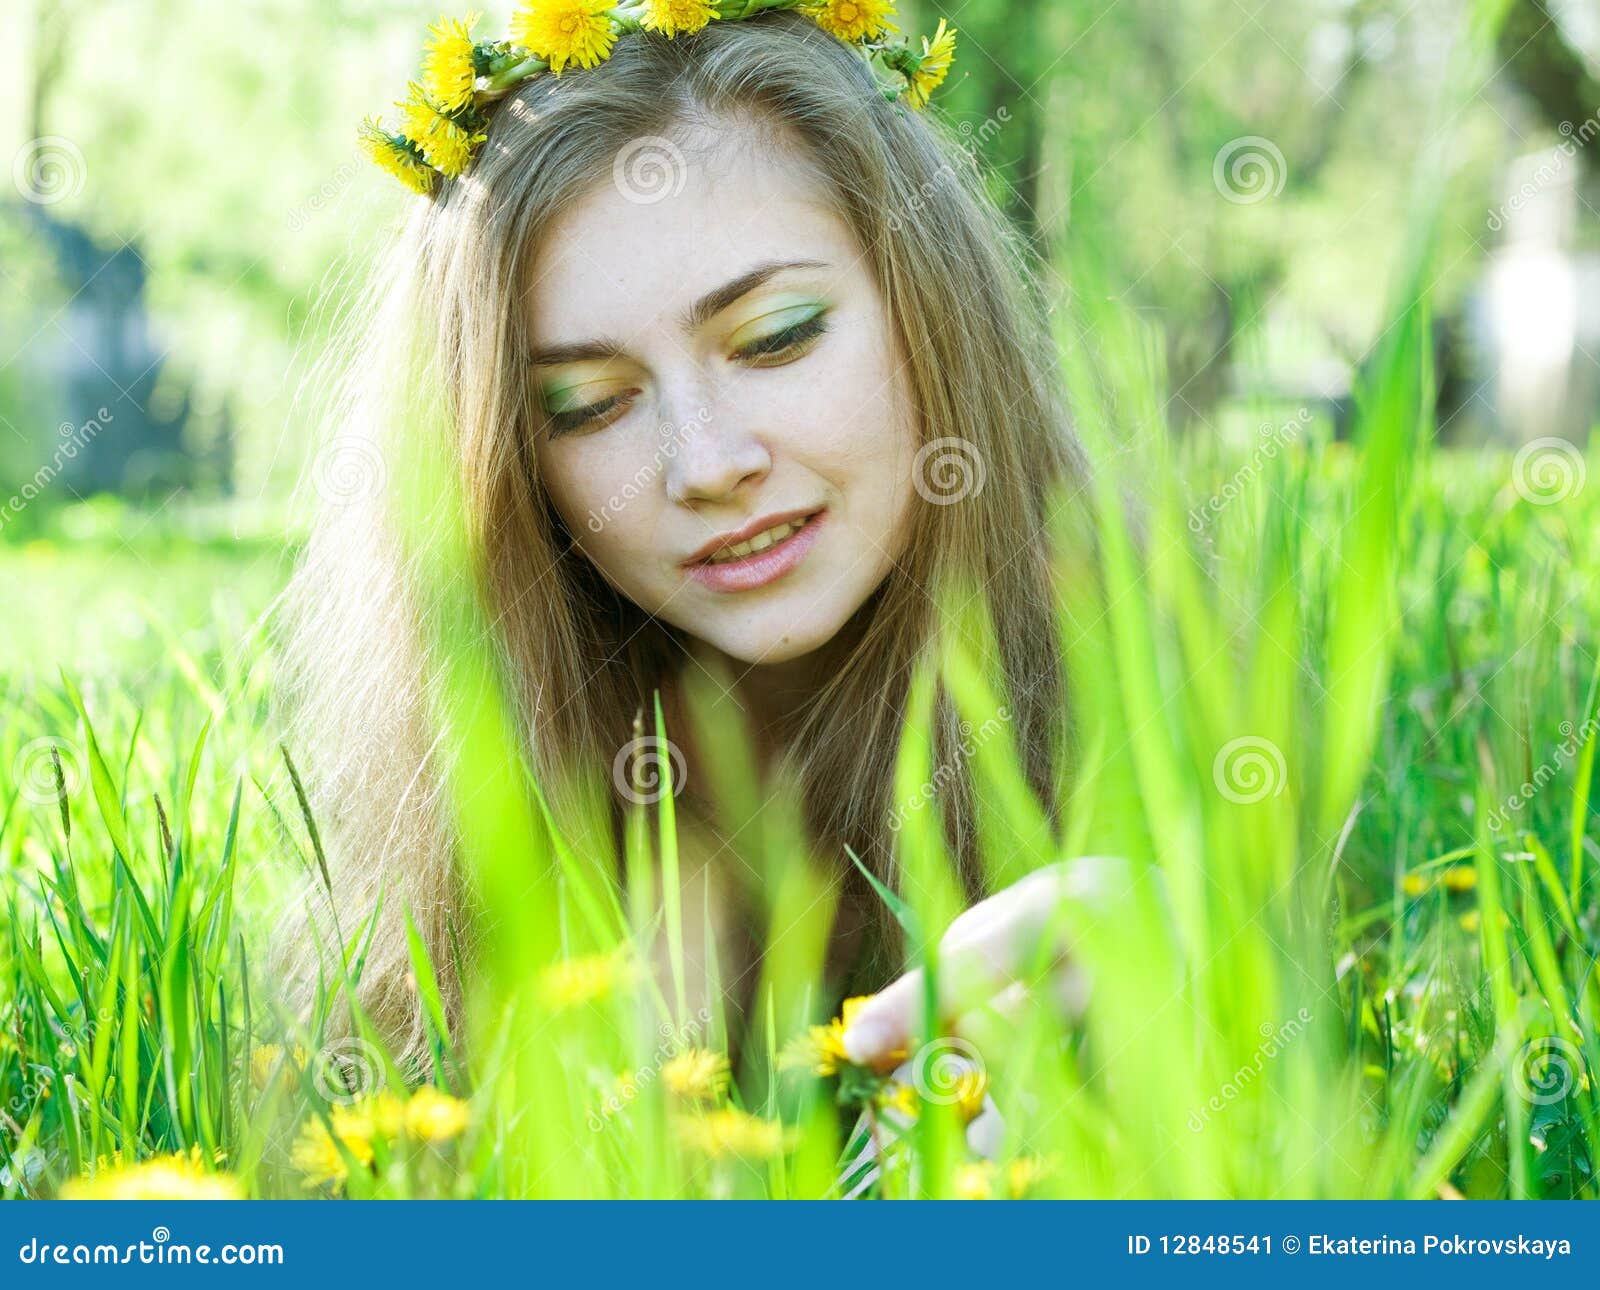 蒲公英领域白女孩美好的愉快的一点婴孩绿色草甸黄色开花蒲公英自然公园庭院 库存图片 - 图片 包括有 乐趣, 愉快: 115874649